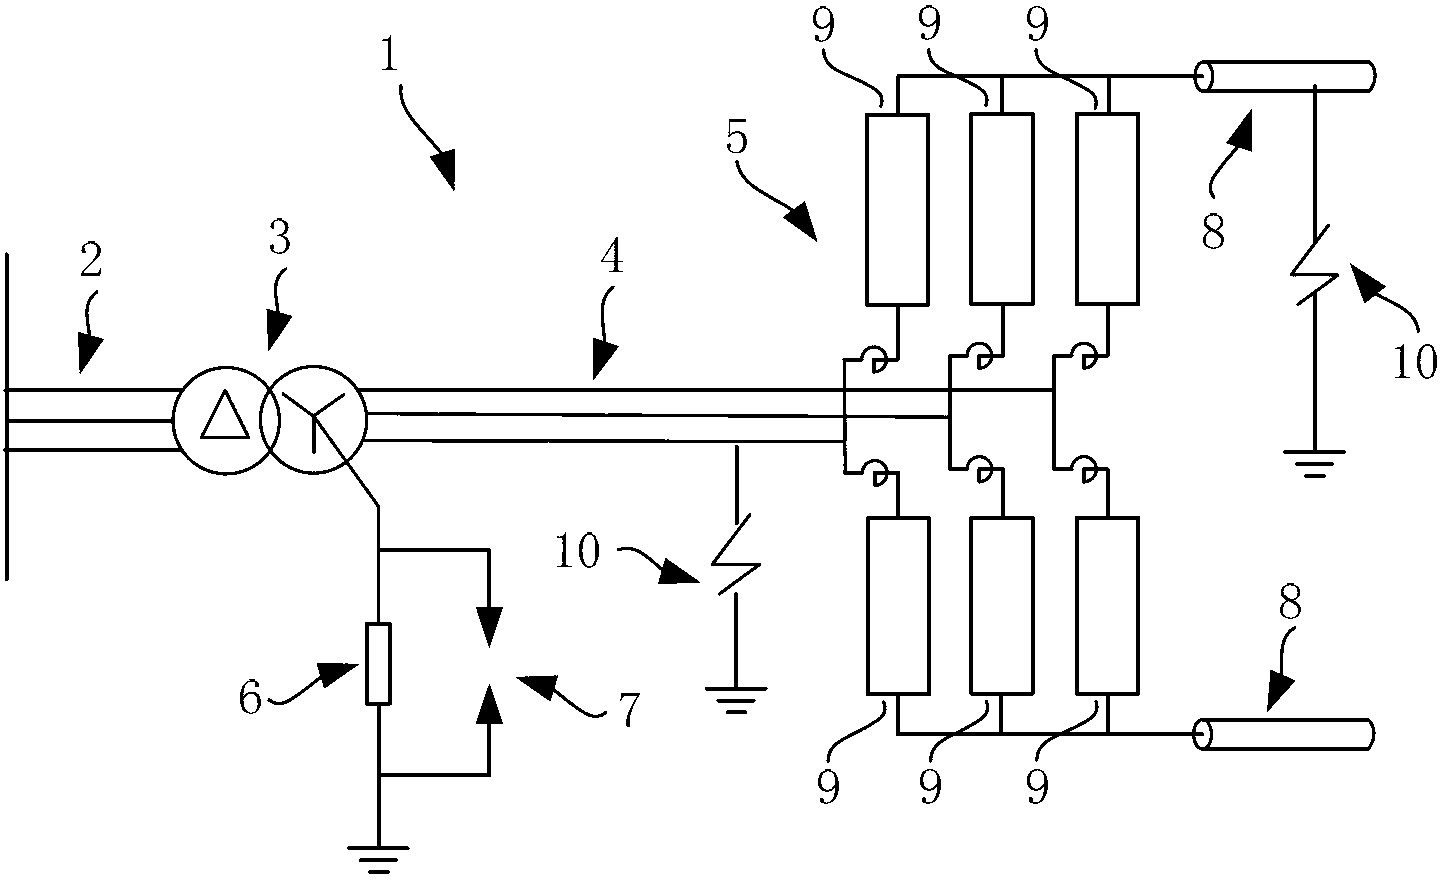 Overvoltage protection device and method for alternating current side of voltage source converter high voltage direct current transmission system